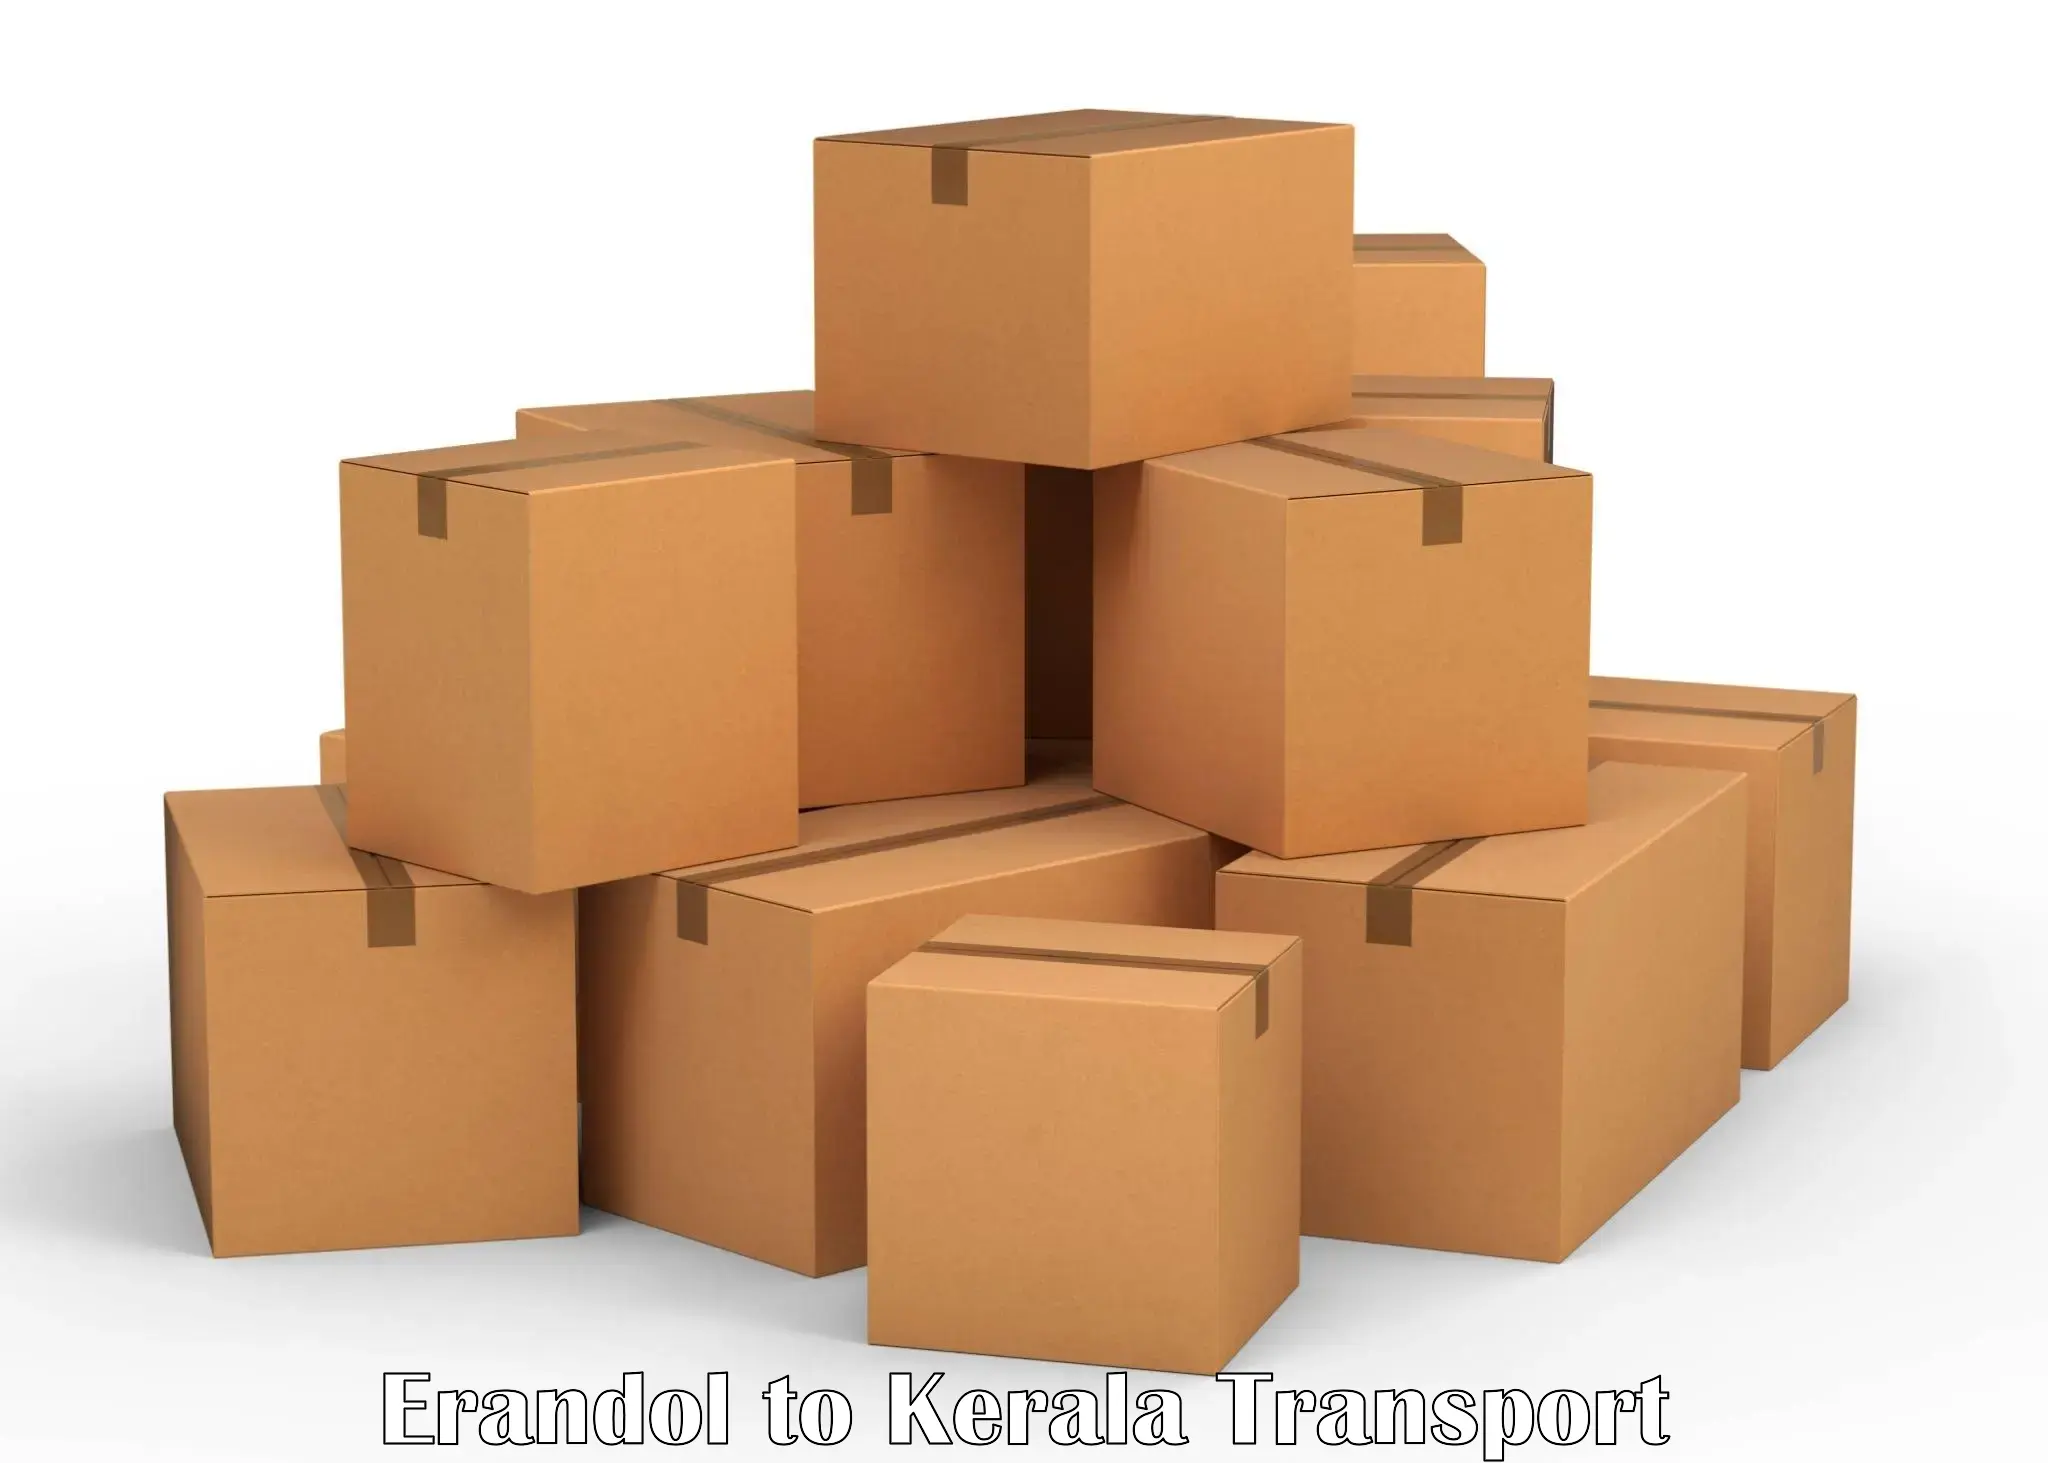 India truck logistics services Erandol to Kerala